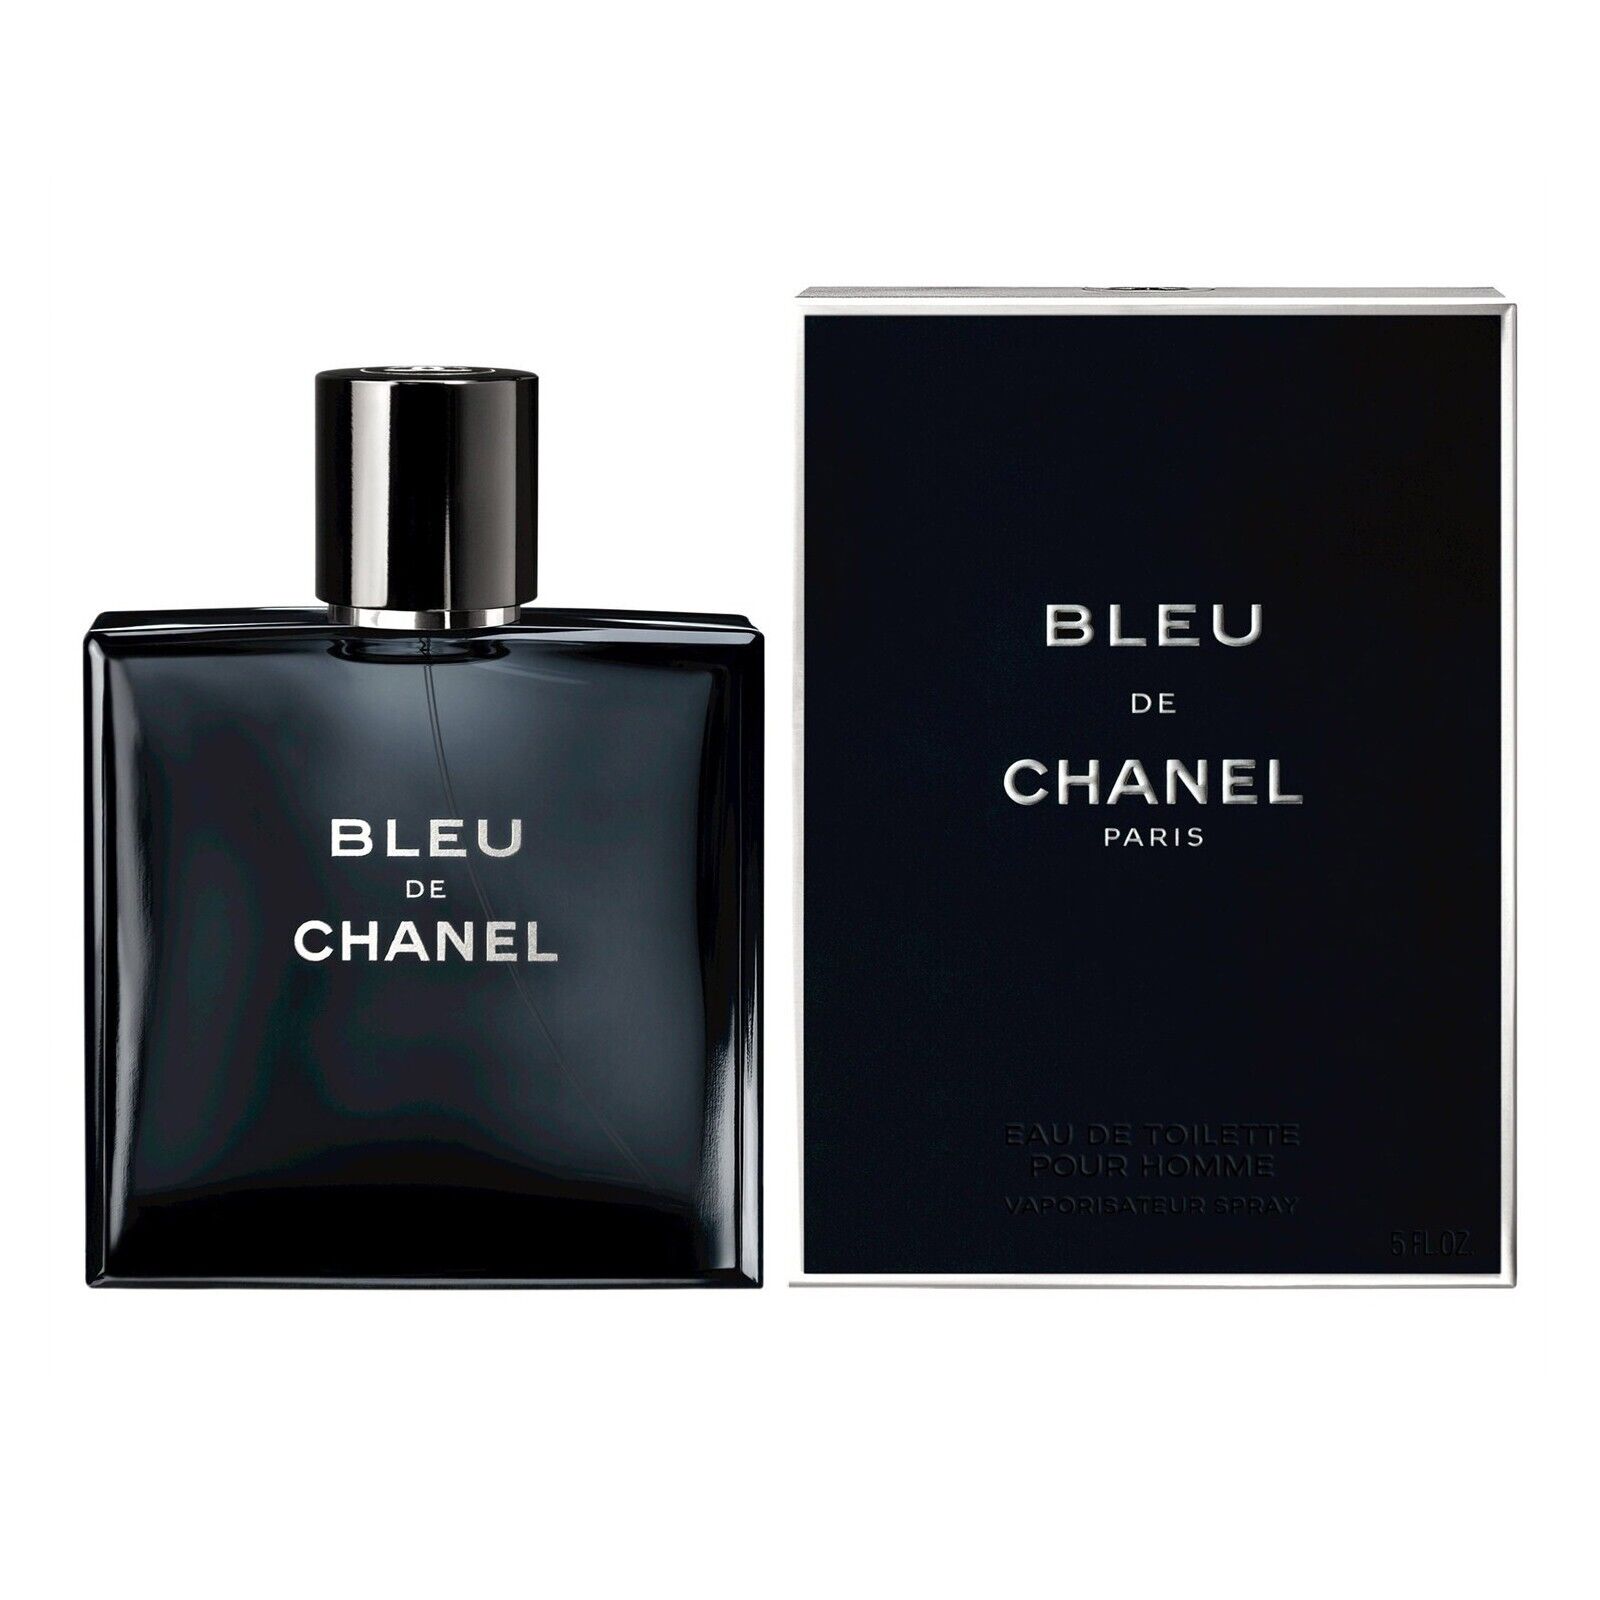 Bleu de Paris Mens Perfume 3.4oz Eau de Toilltte Cologne for Men New Sealed